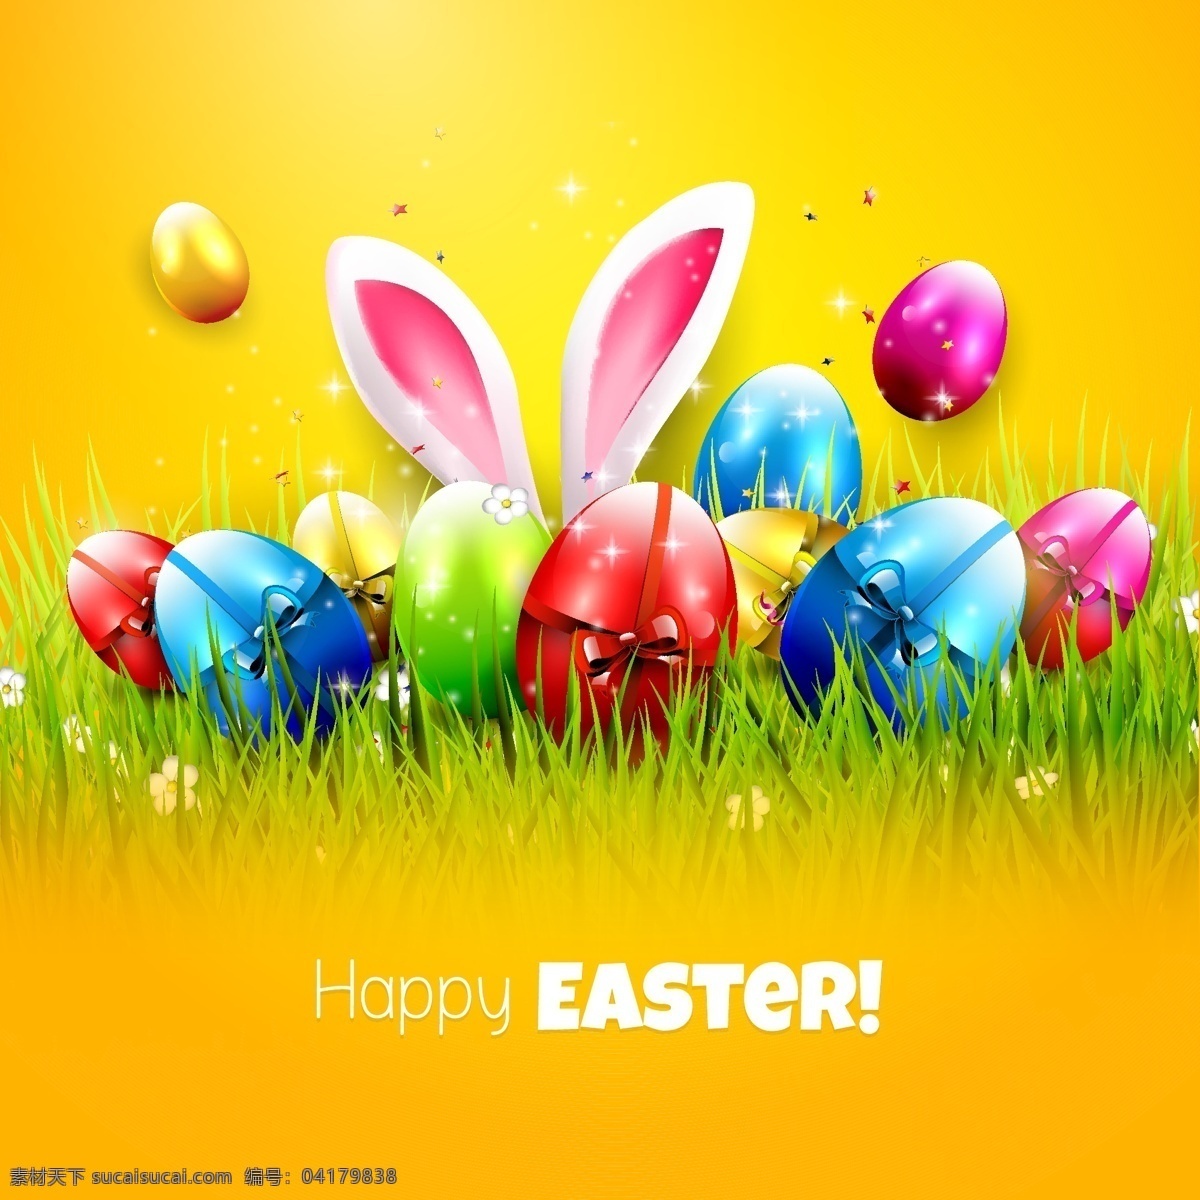 黄色 背景 复活节 海报 矢量 兔子耳朵 彩蛋 礼物 卡通 矢量素材 鸡蛋 插画